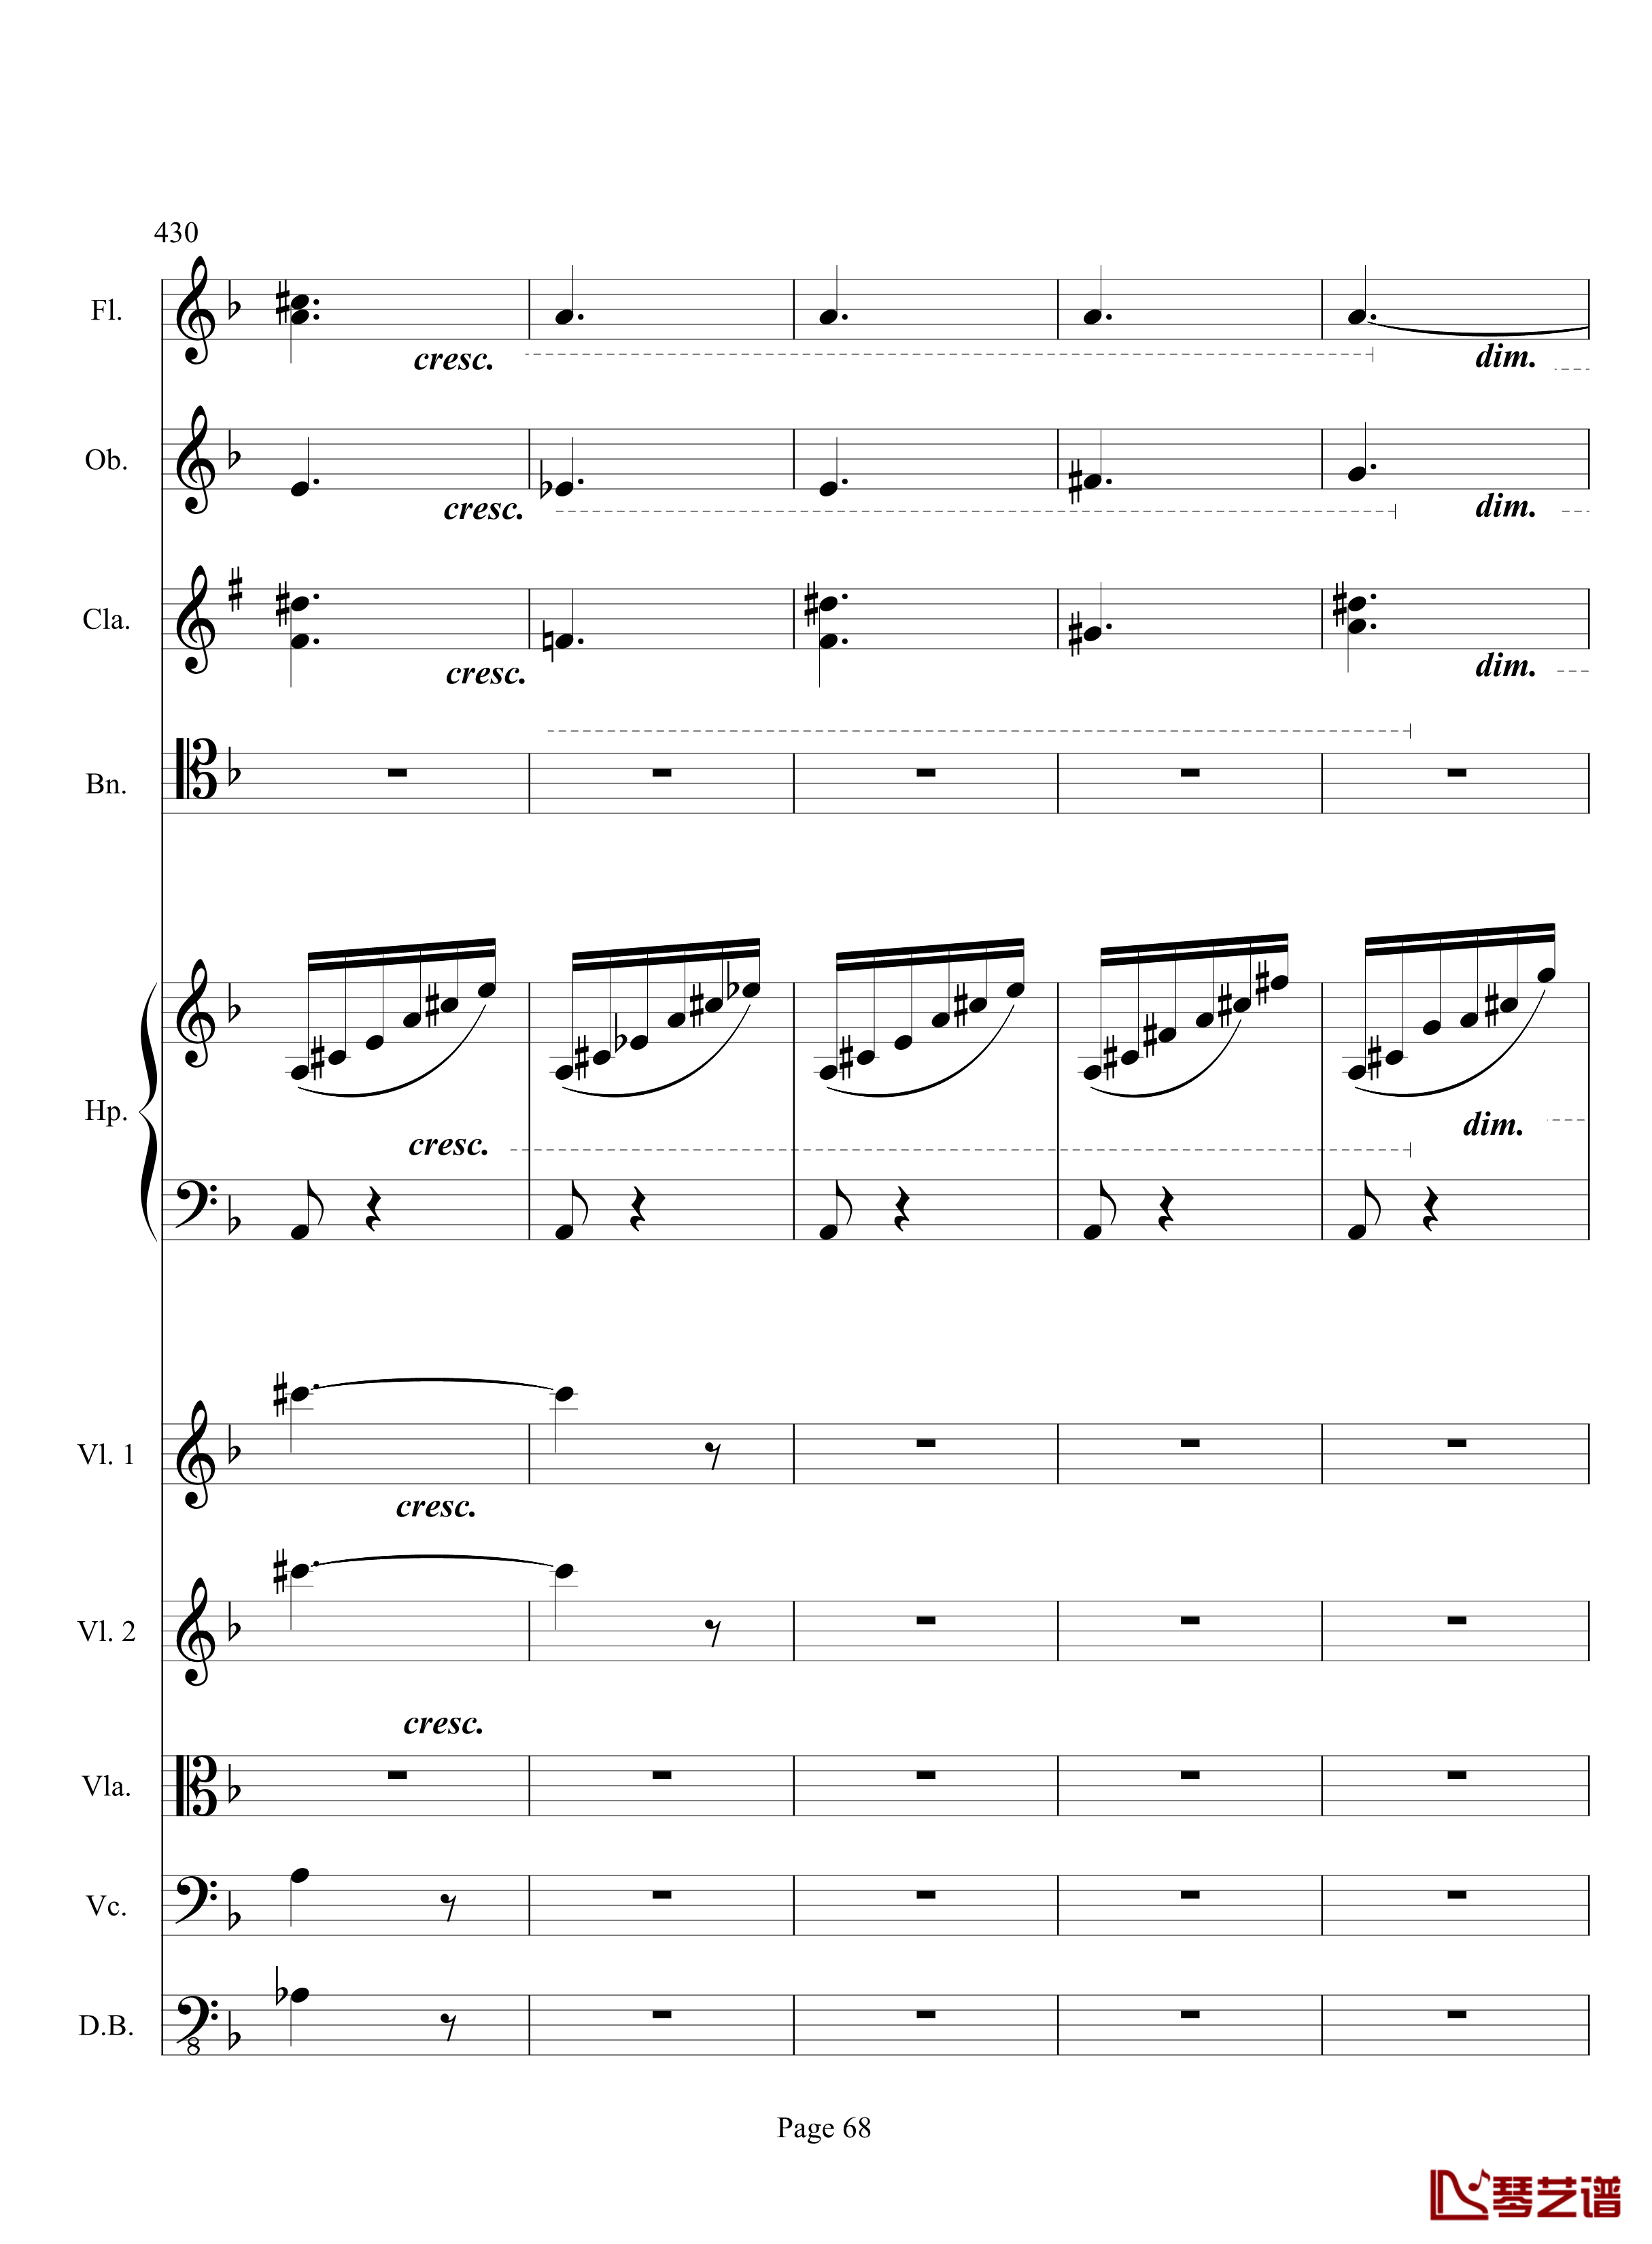 奏鸣曲之交响钢琴谱-第17首-Ⅲ-贝多芬-beethoven68